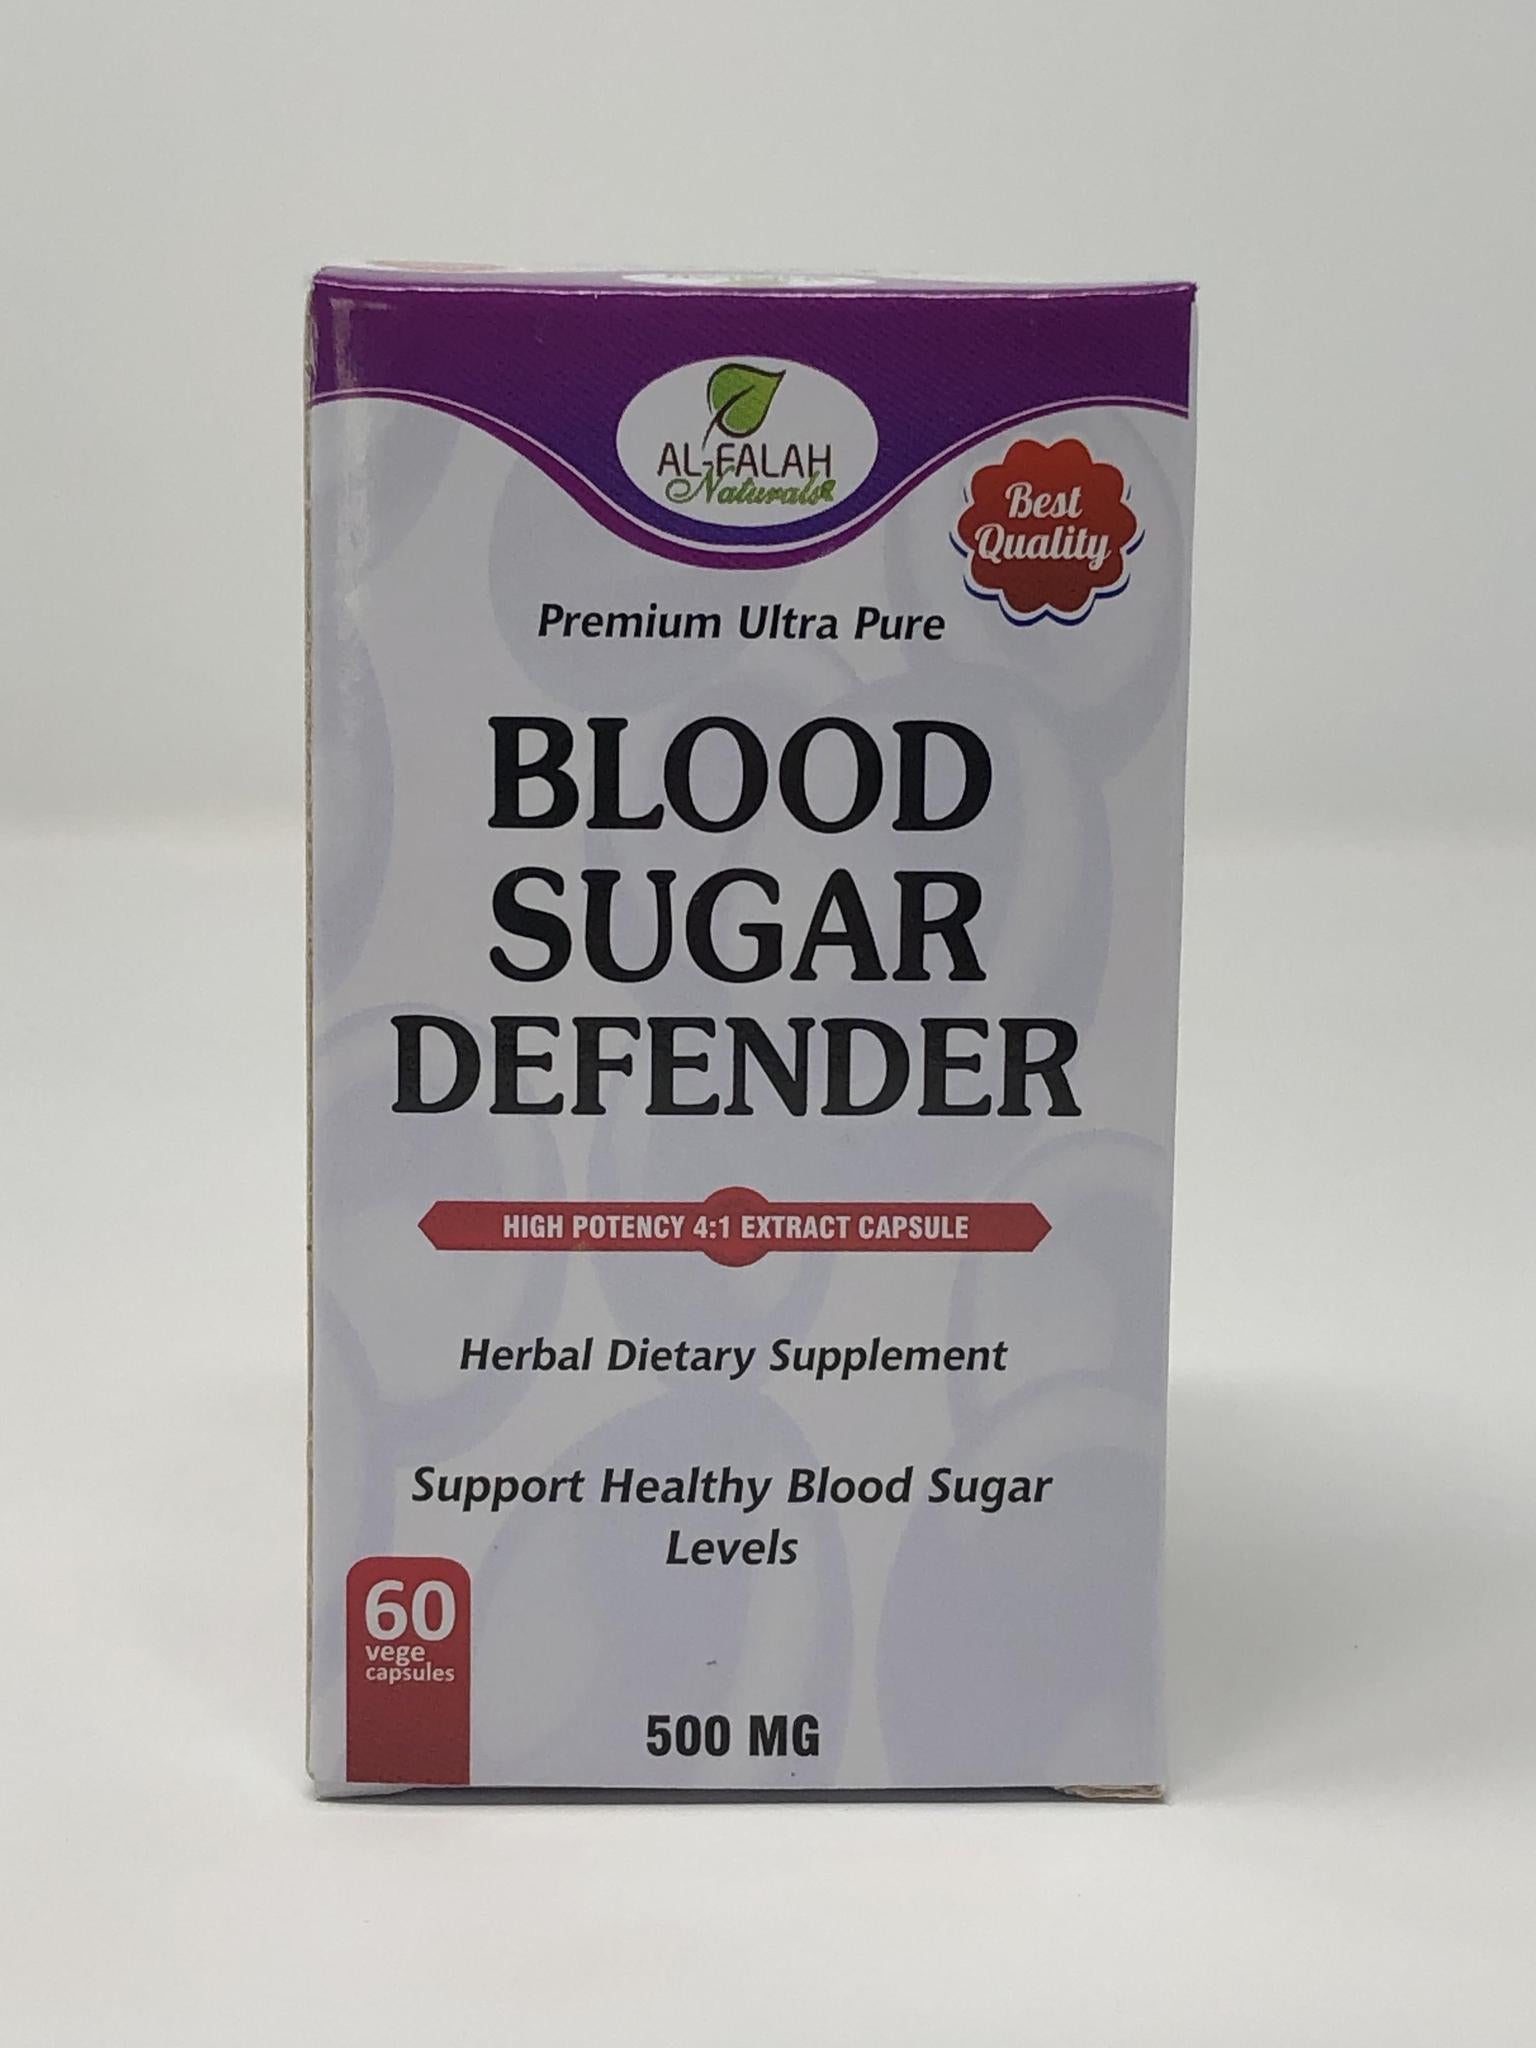 Blood Sugar Defender Premium Extract Capsules 500 MG - 60 Vege Capsules